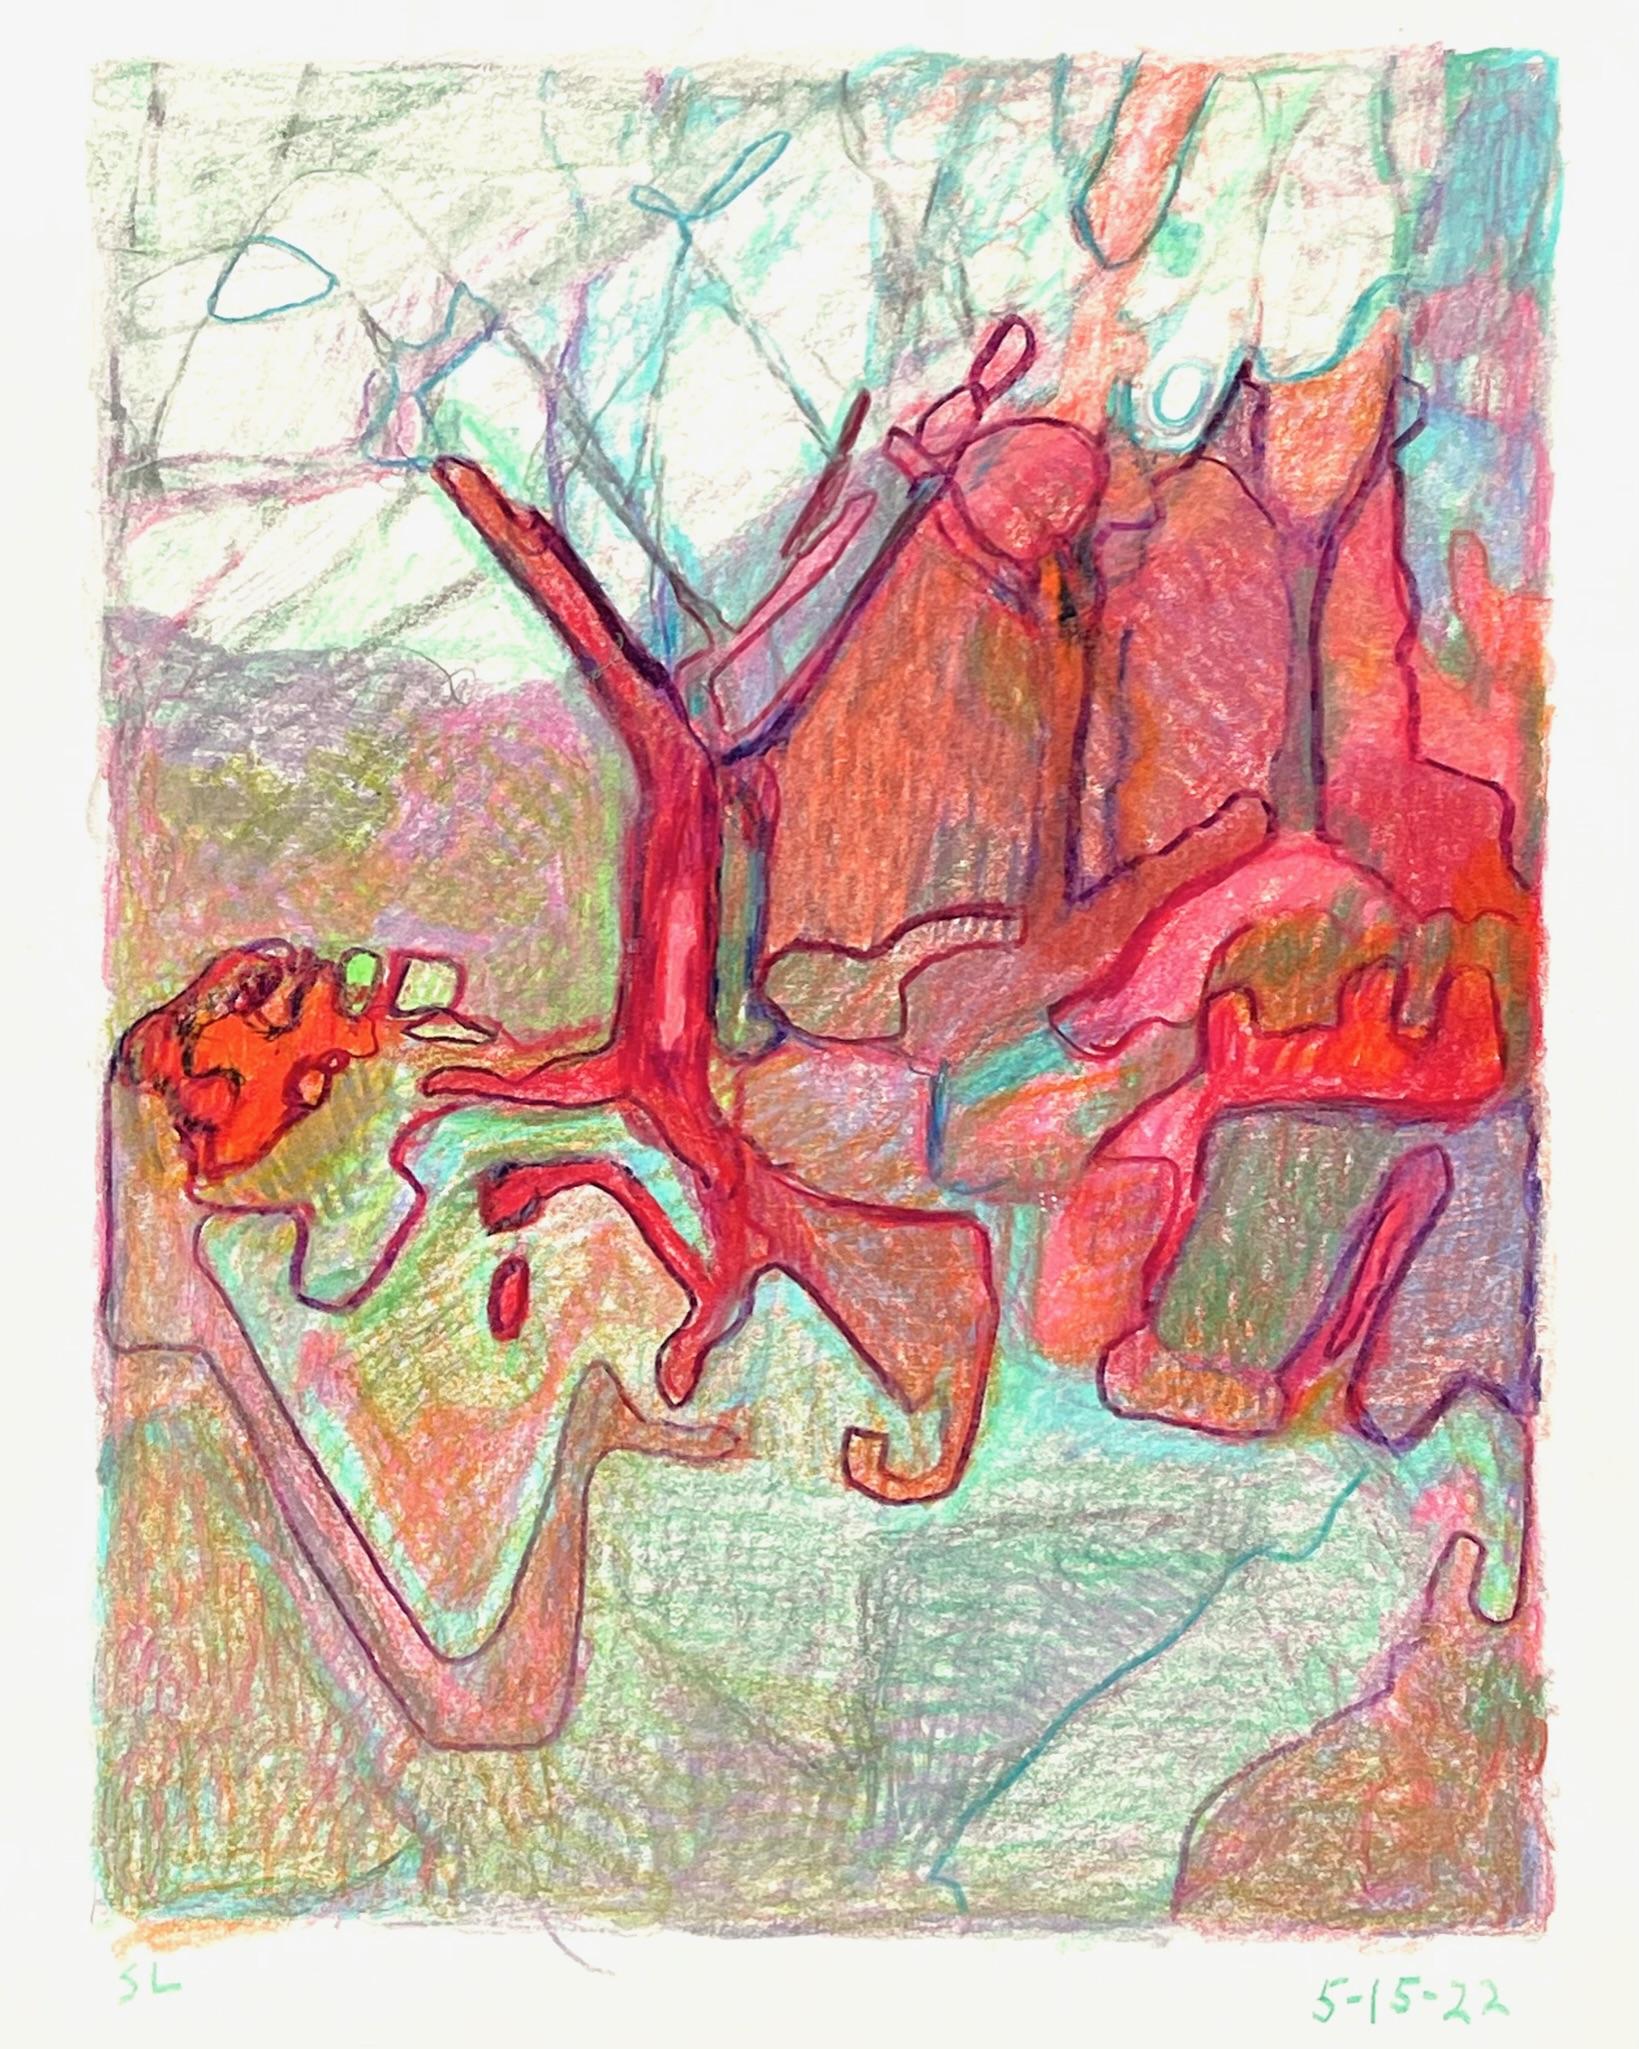 5-15-22, dessin de paysage abstrait impressionniste au crayon en couleur